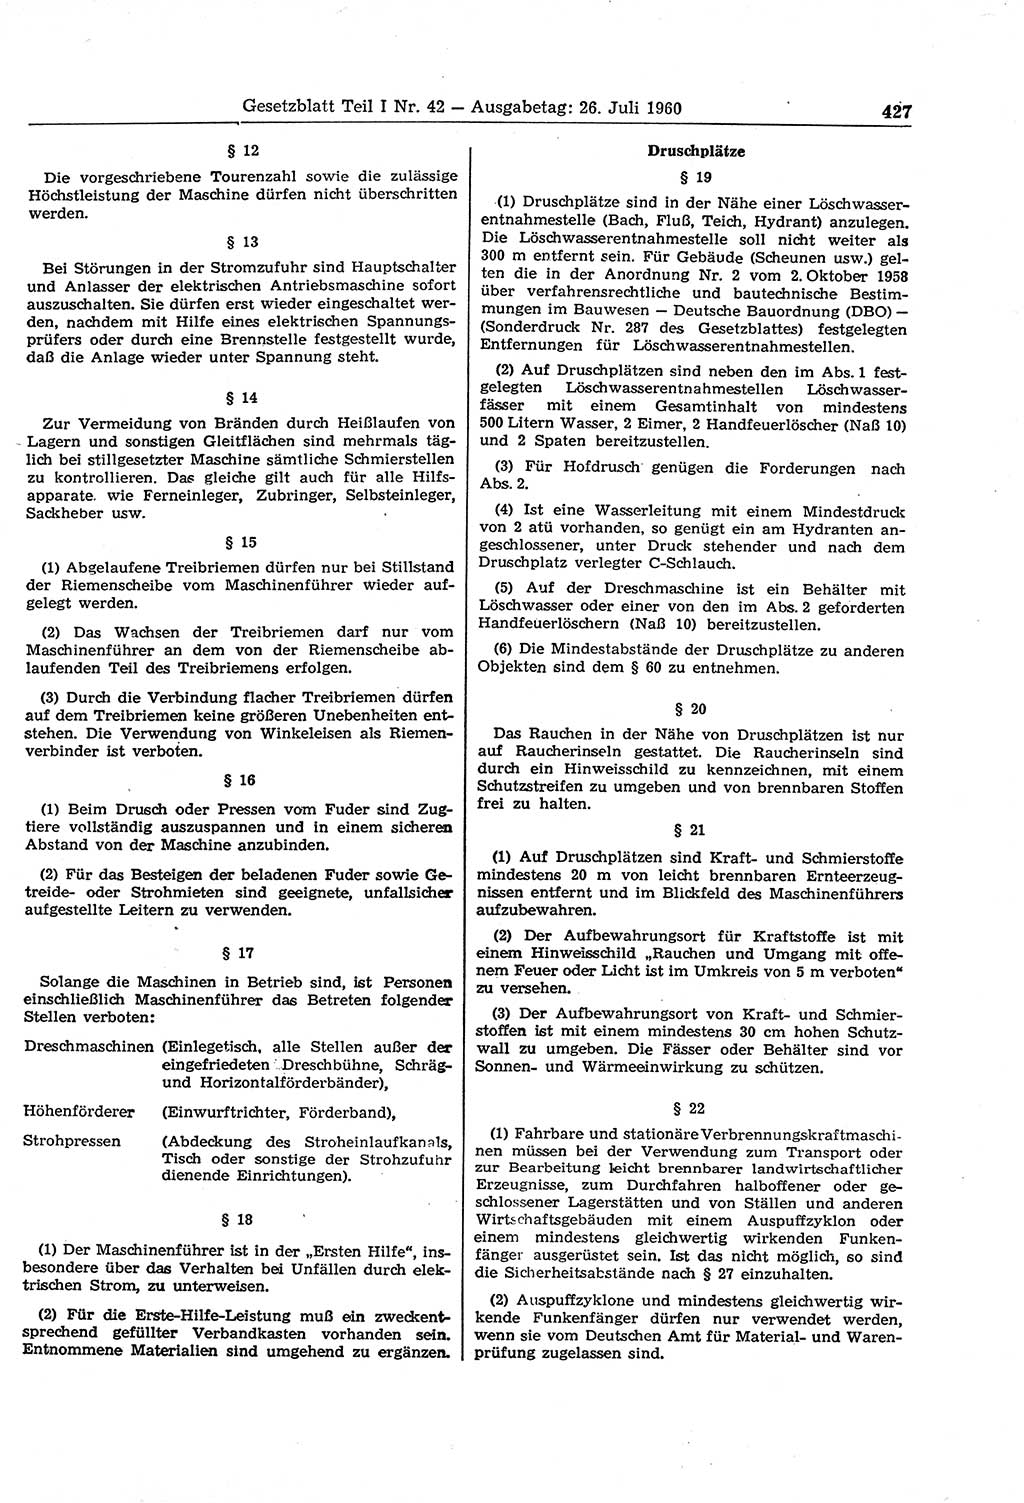 Gesetzblatt (GBl.) der Deutschen Demokratischen Republik (DDR) Teil Ⅰ 1960, Seite 427 (GBl. DDR Ⅰ 1960, S. 427)